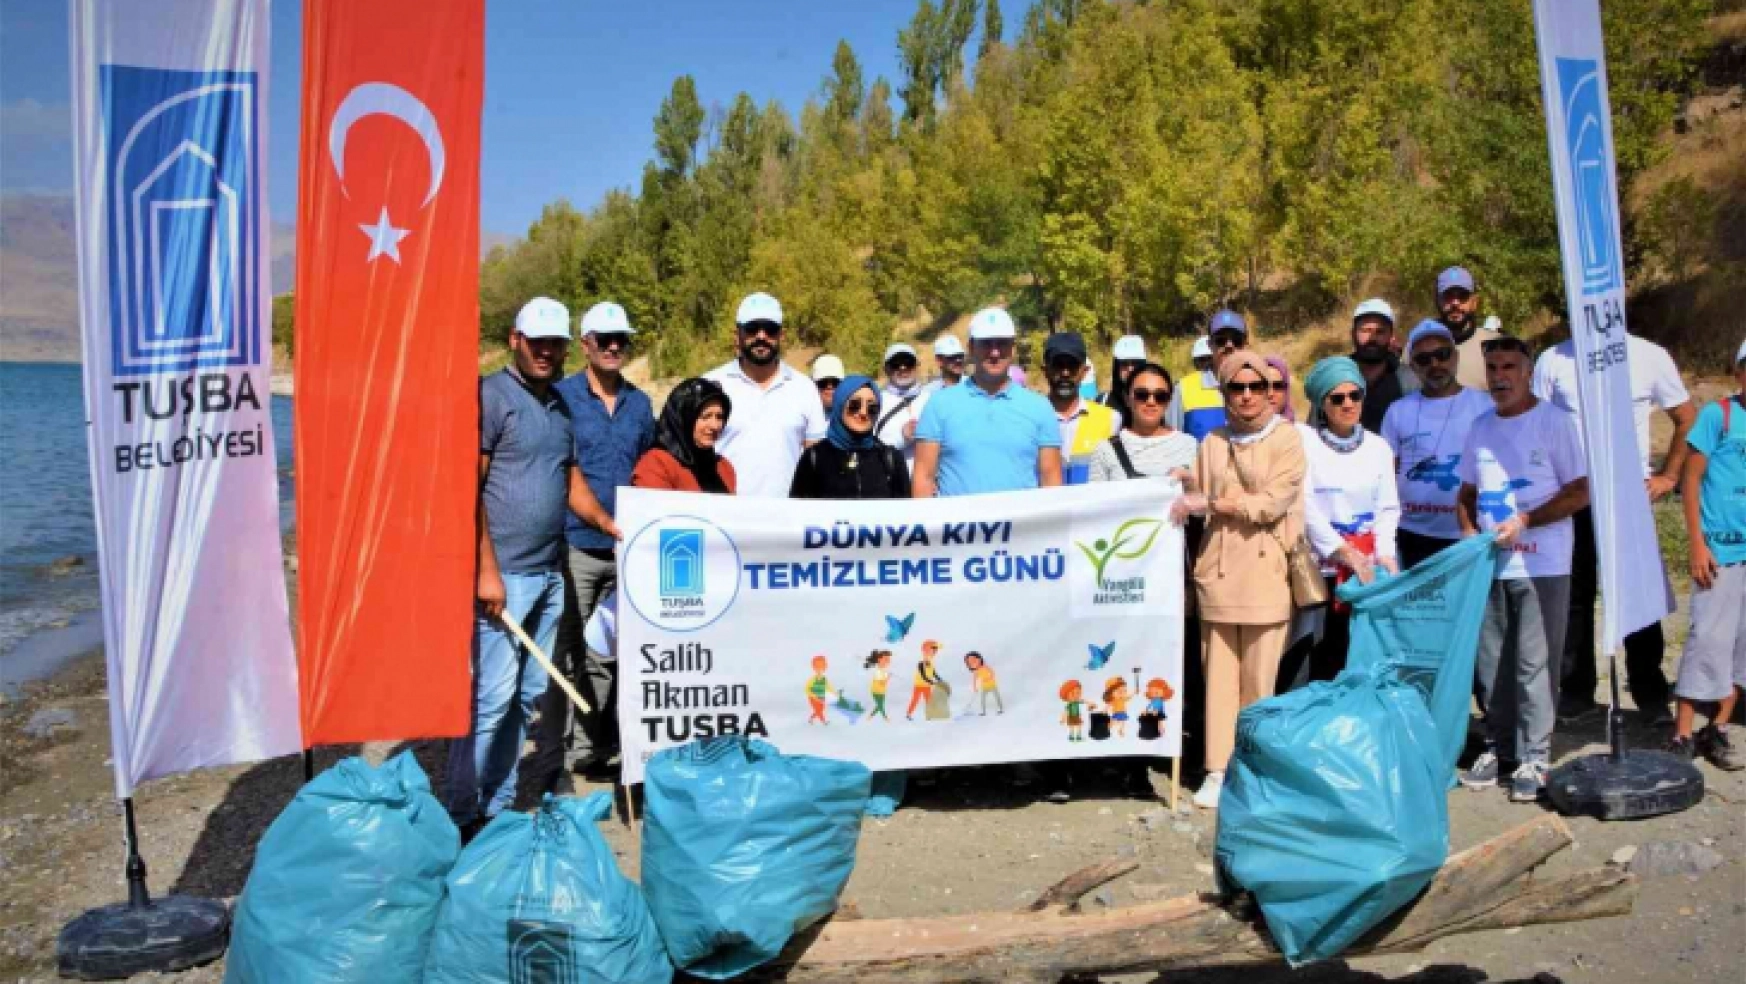 Tuşba Belediyesinden 'Uluslararası Kıyı Temizleme Günü' etkinliği